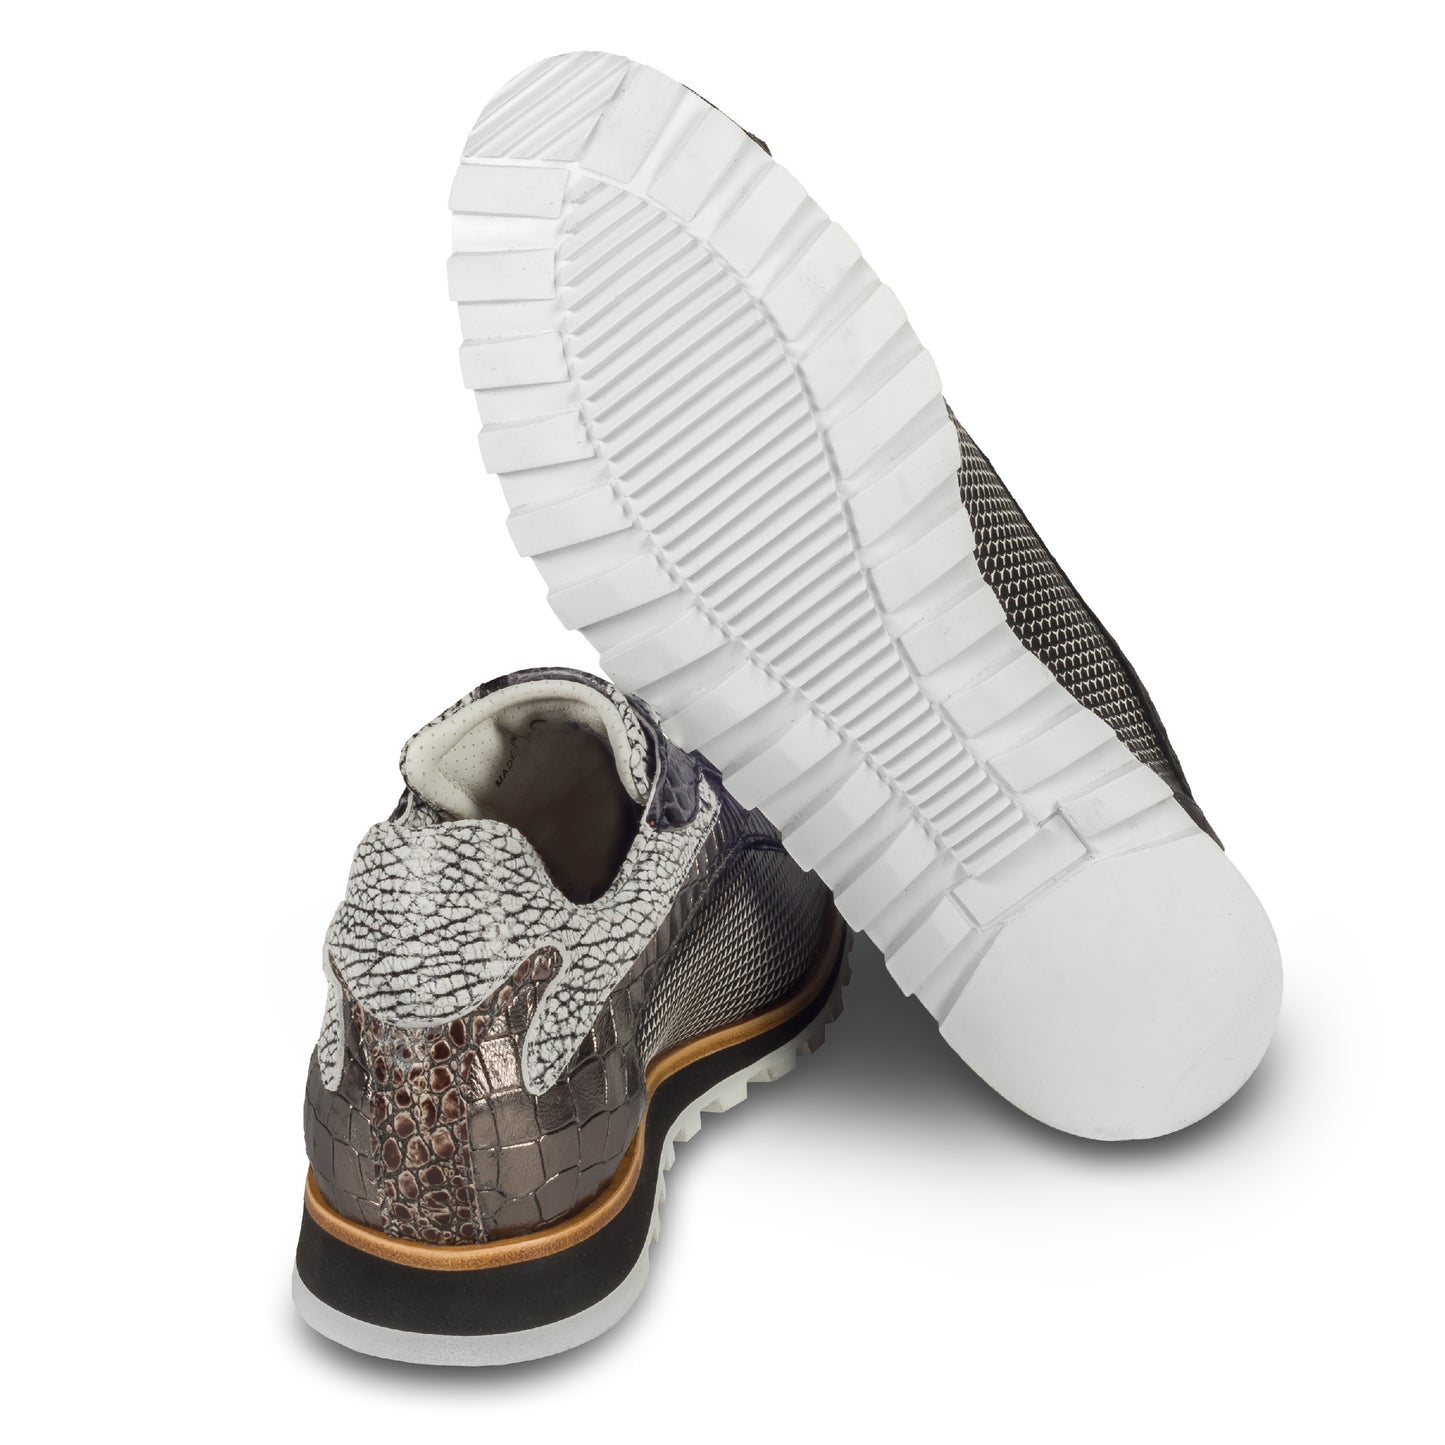 Lorenzi | Handgefertigter Leder-Sneaker in schwarz mit weiß und silber grau, Letzte Größe 42/43